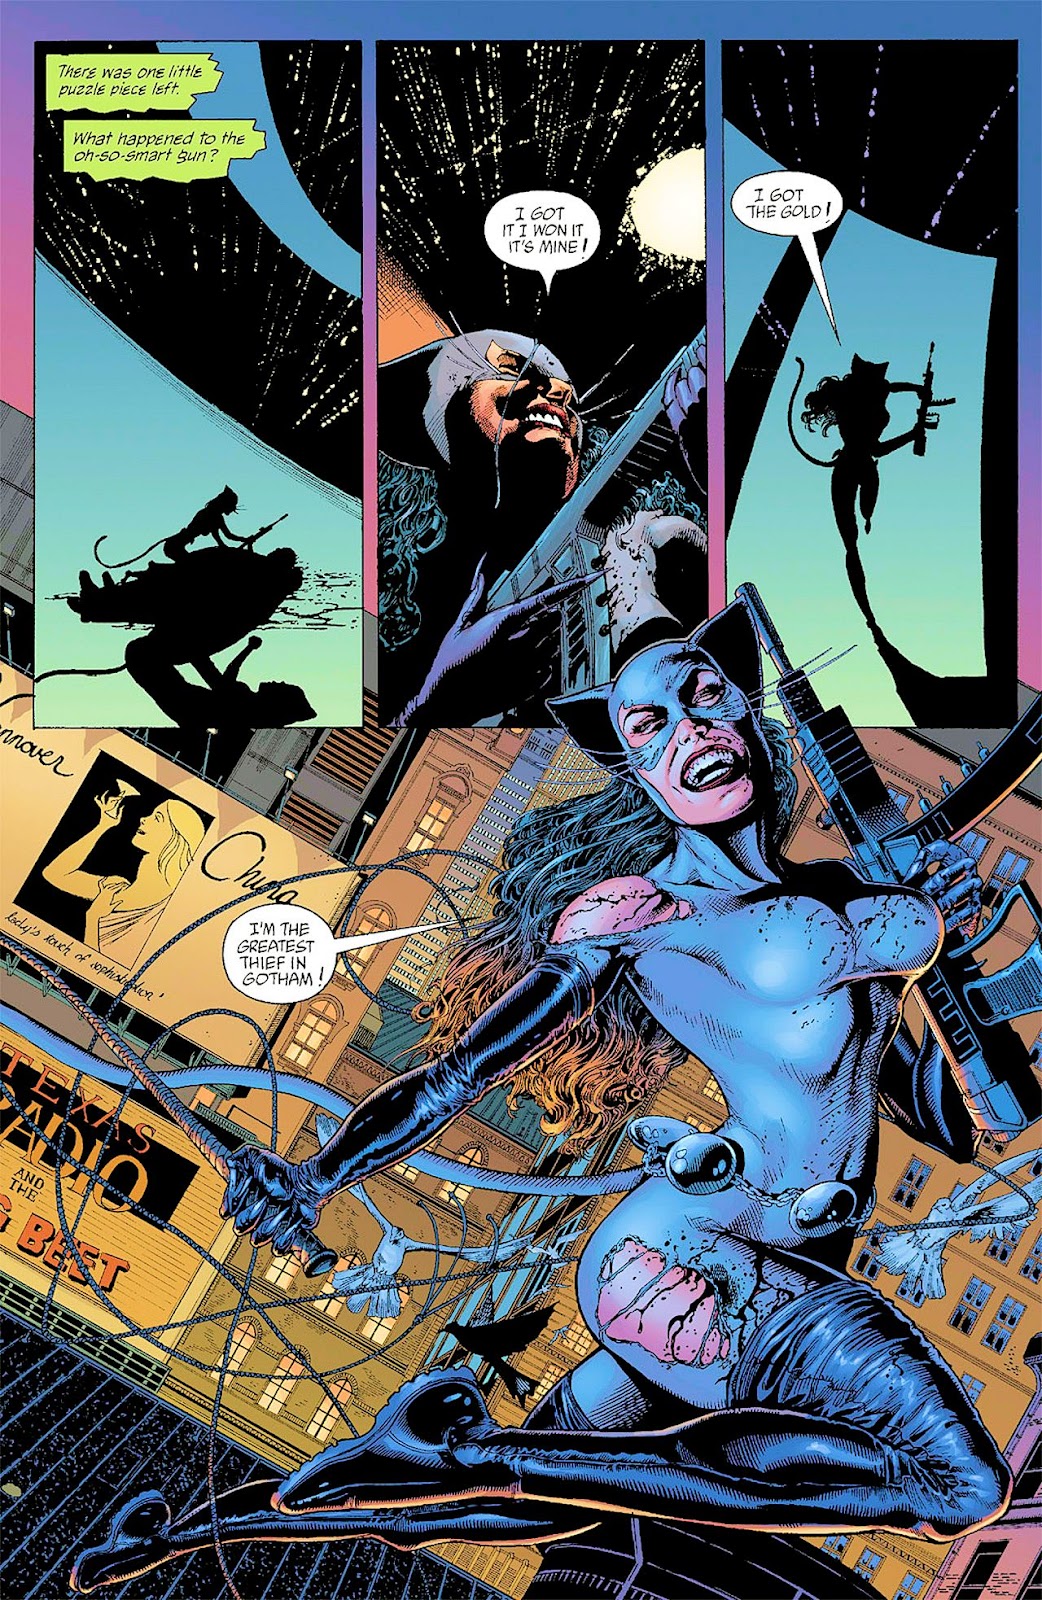 Batman Catwoman Trail Of The Gun Issue 2 Read Batman Catwoman Trail